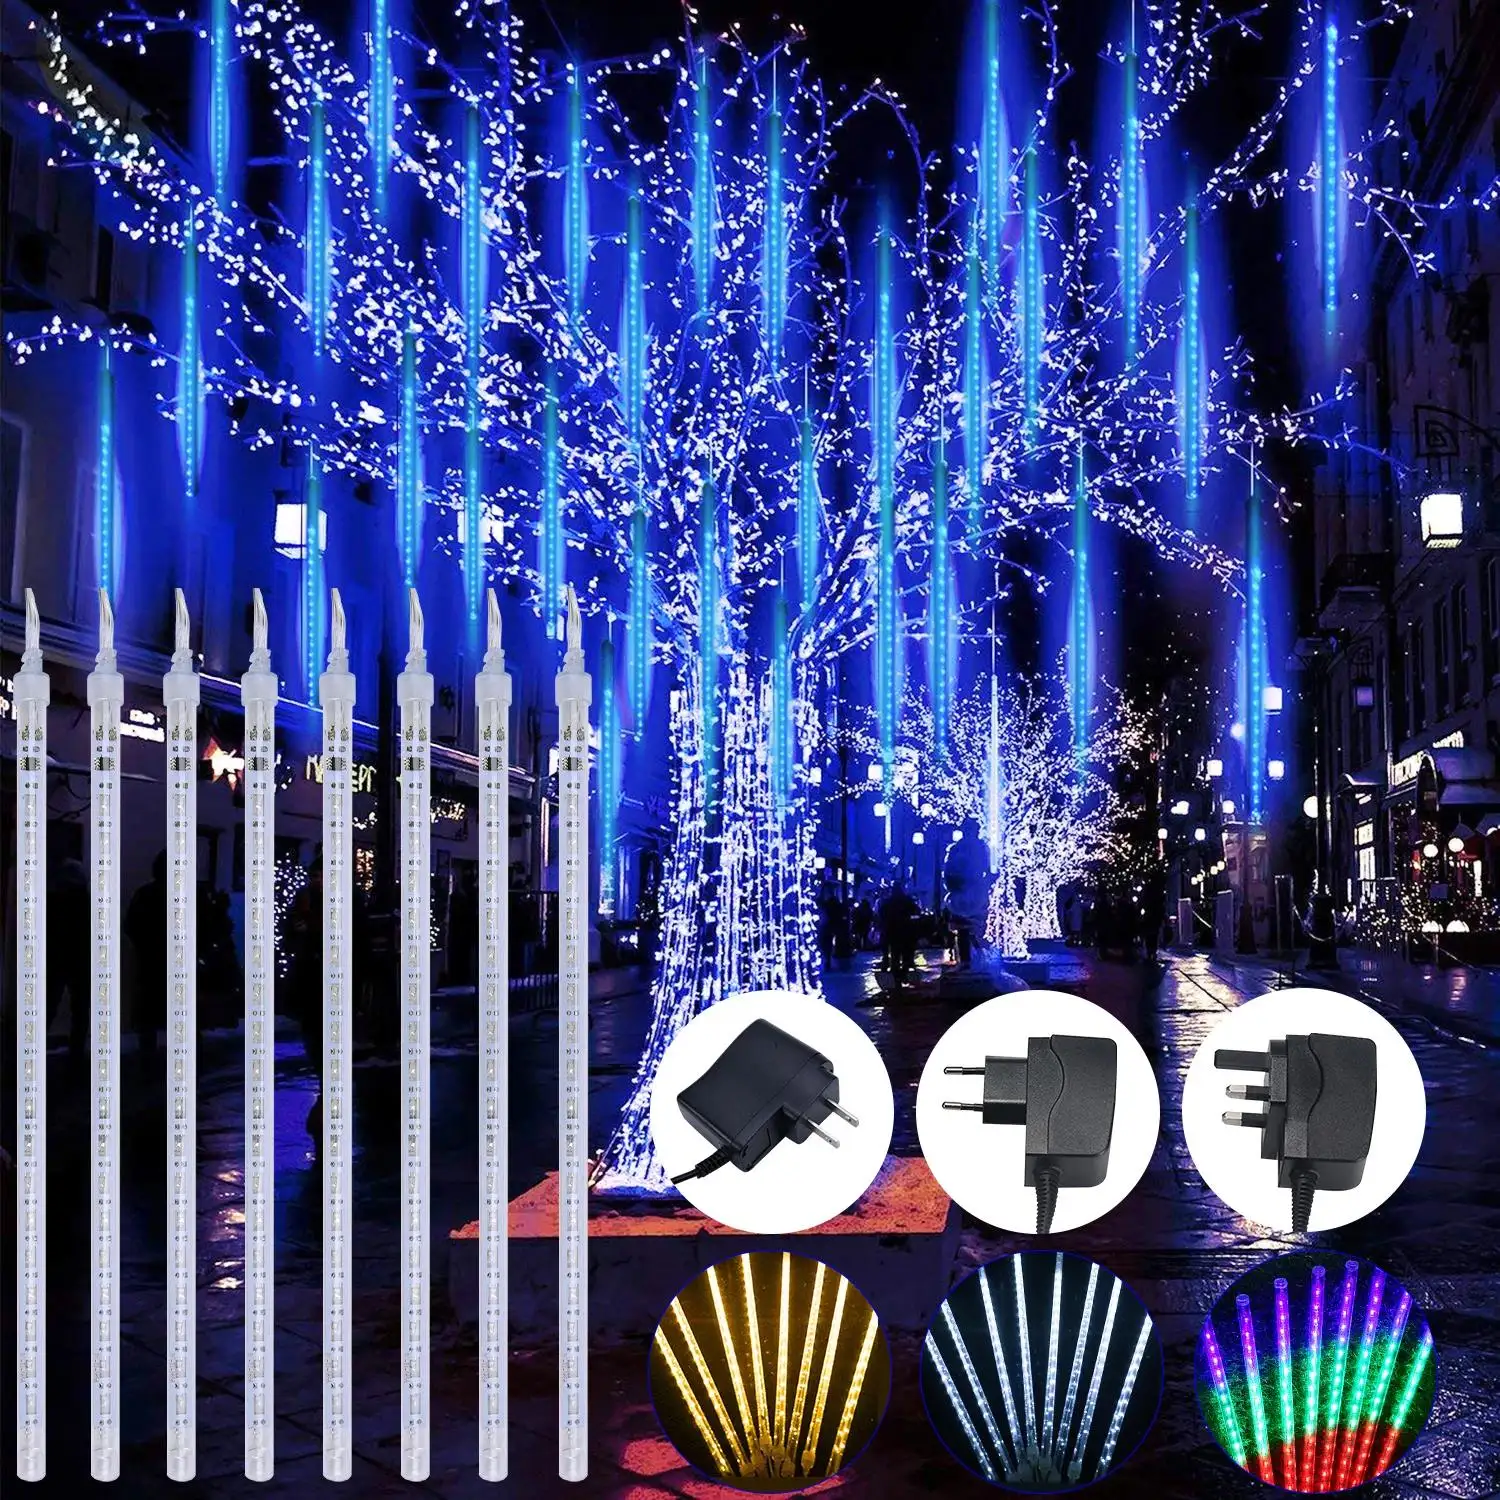 LEDライト流星群レインライト、8チューブ30cm、落下する雨の妖精LEDストリングライト、ホリデーパーティーホーム屋外装飾